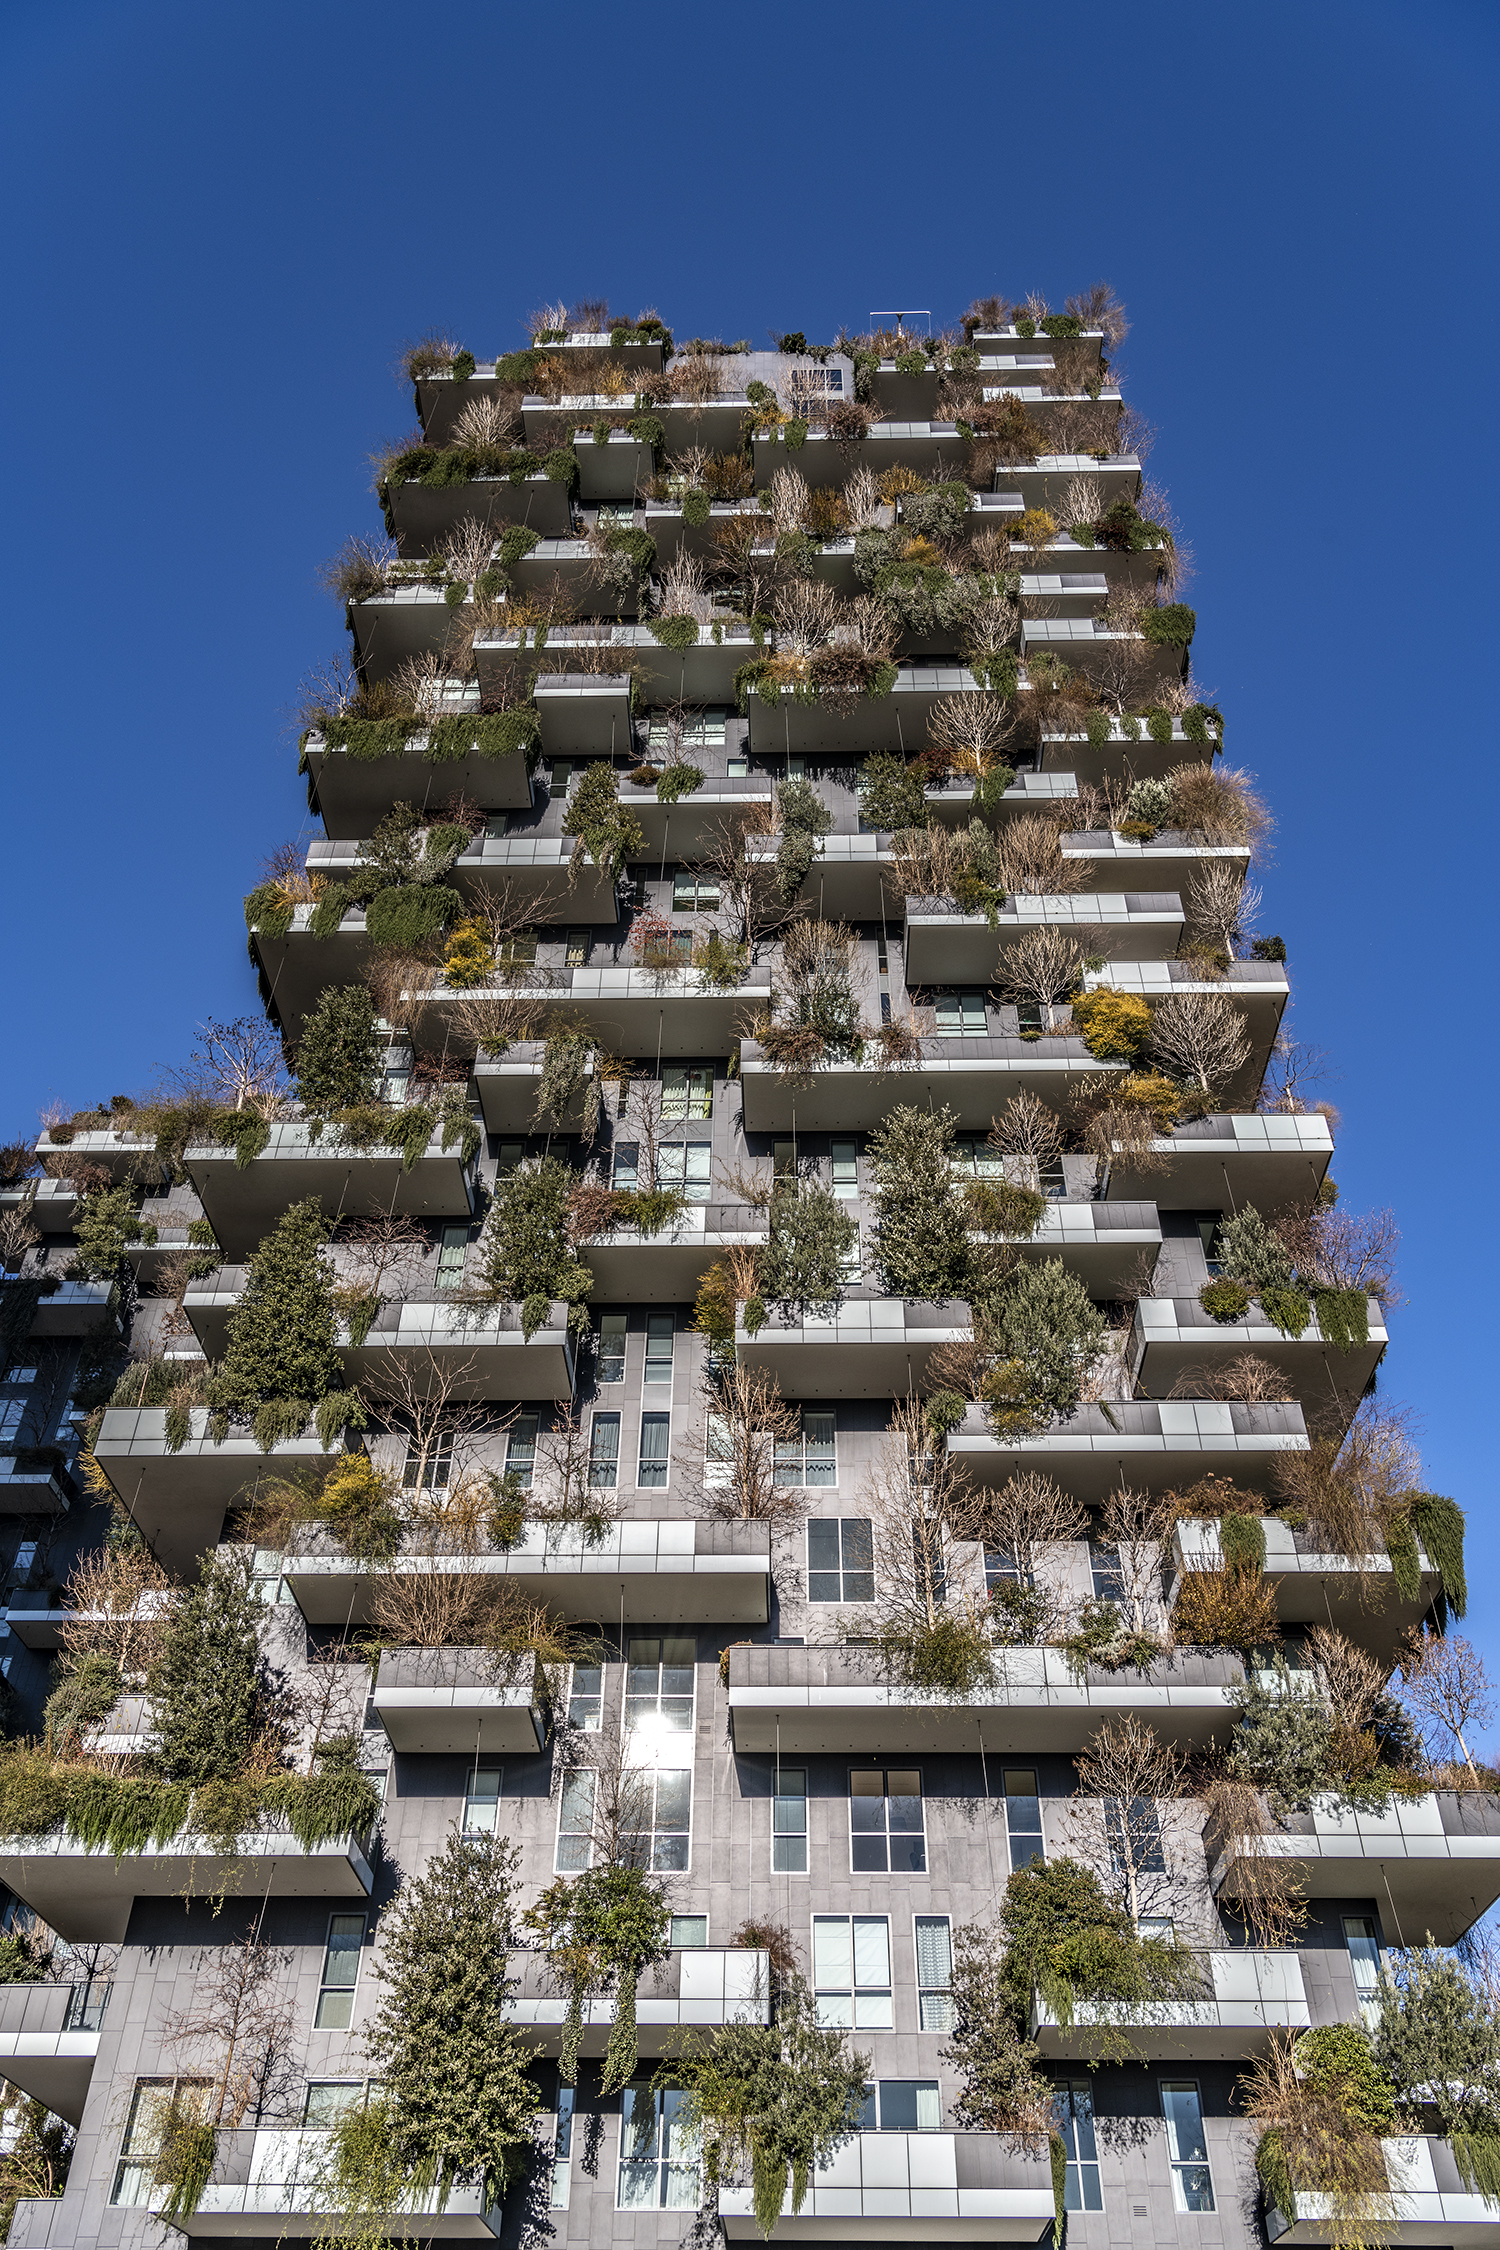 Palazzi a torre - bosco verticale (Milano, Italia)